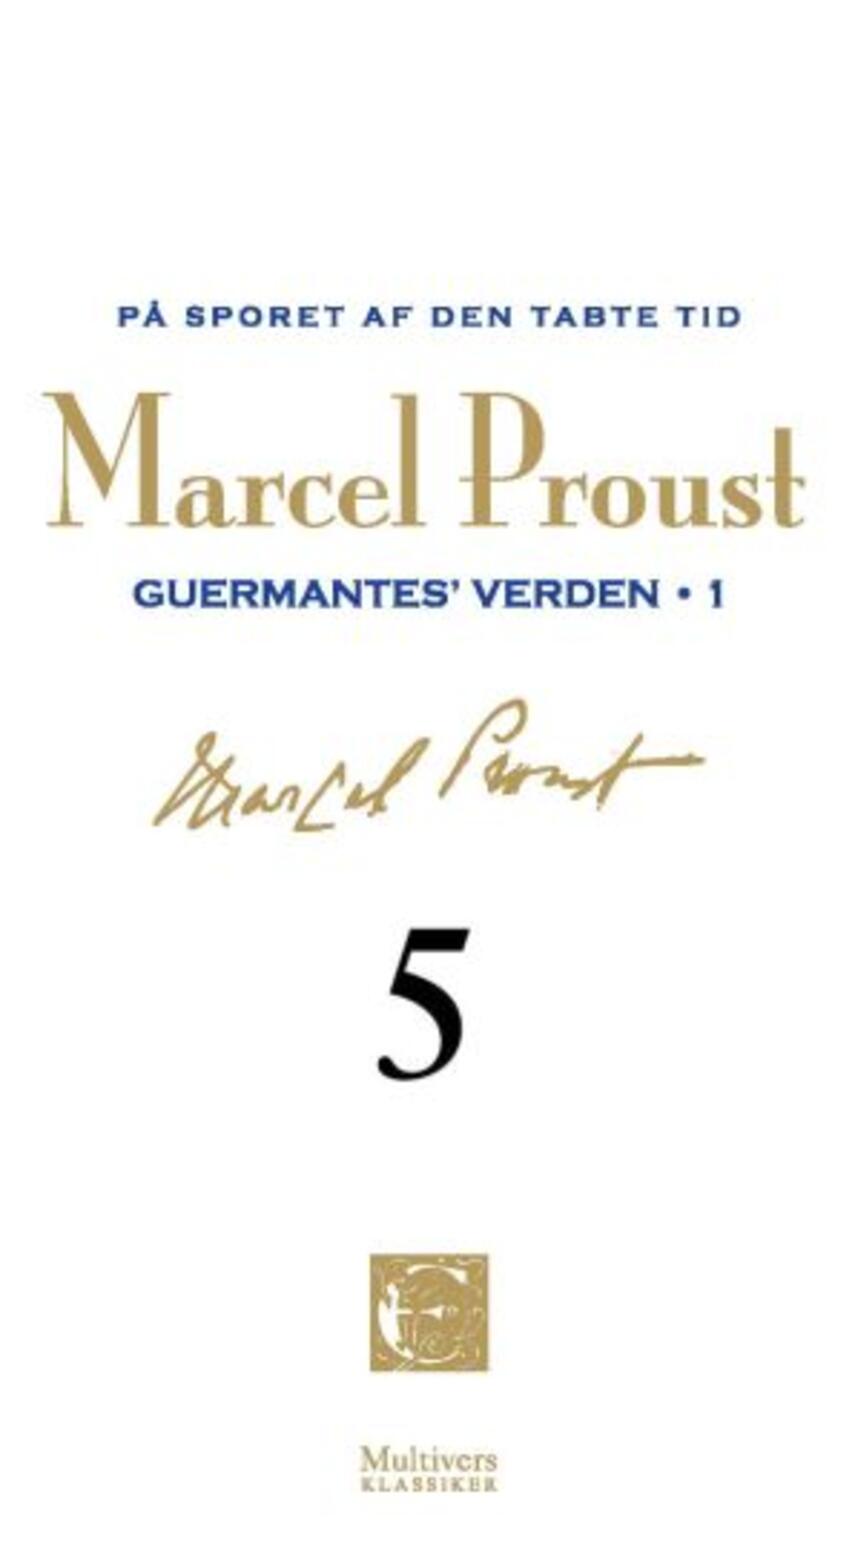 Marcel Proust: På sporet af den tabte tid. Bind 5, Guermantes' verden, 1